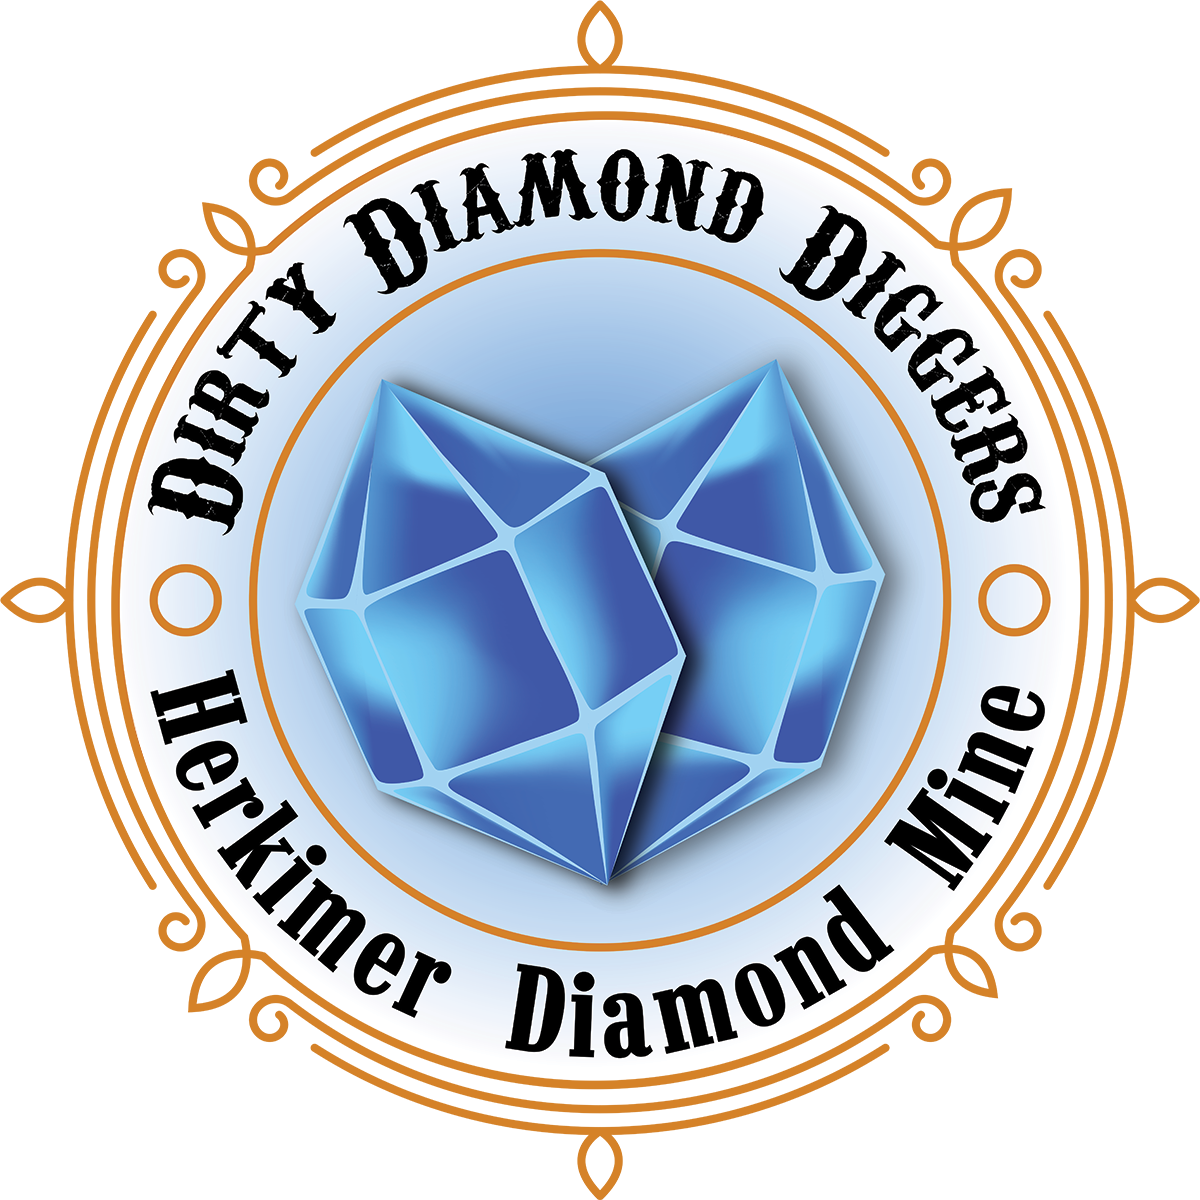 Dirty Diamond Diggers&#39; Herkimer Diamond Mine